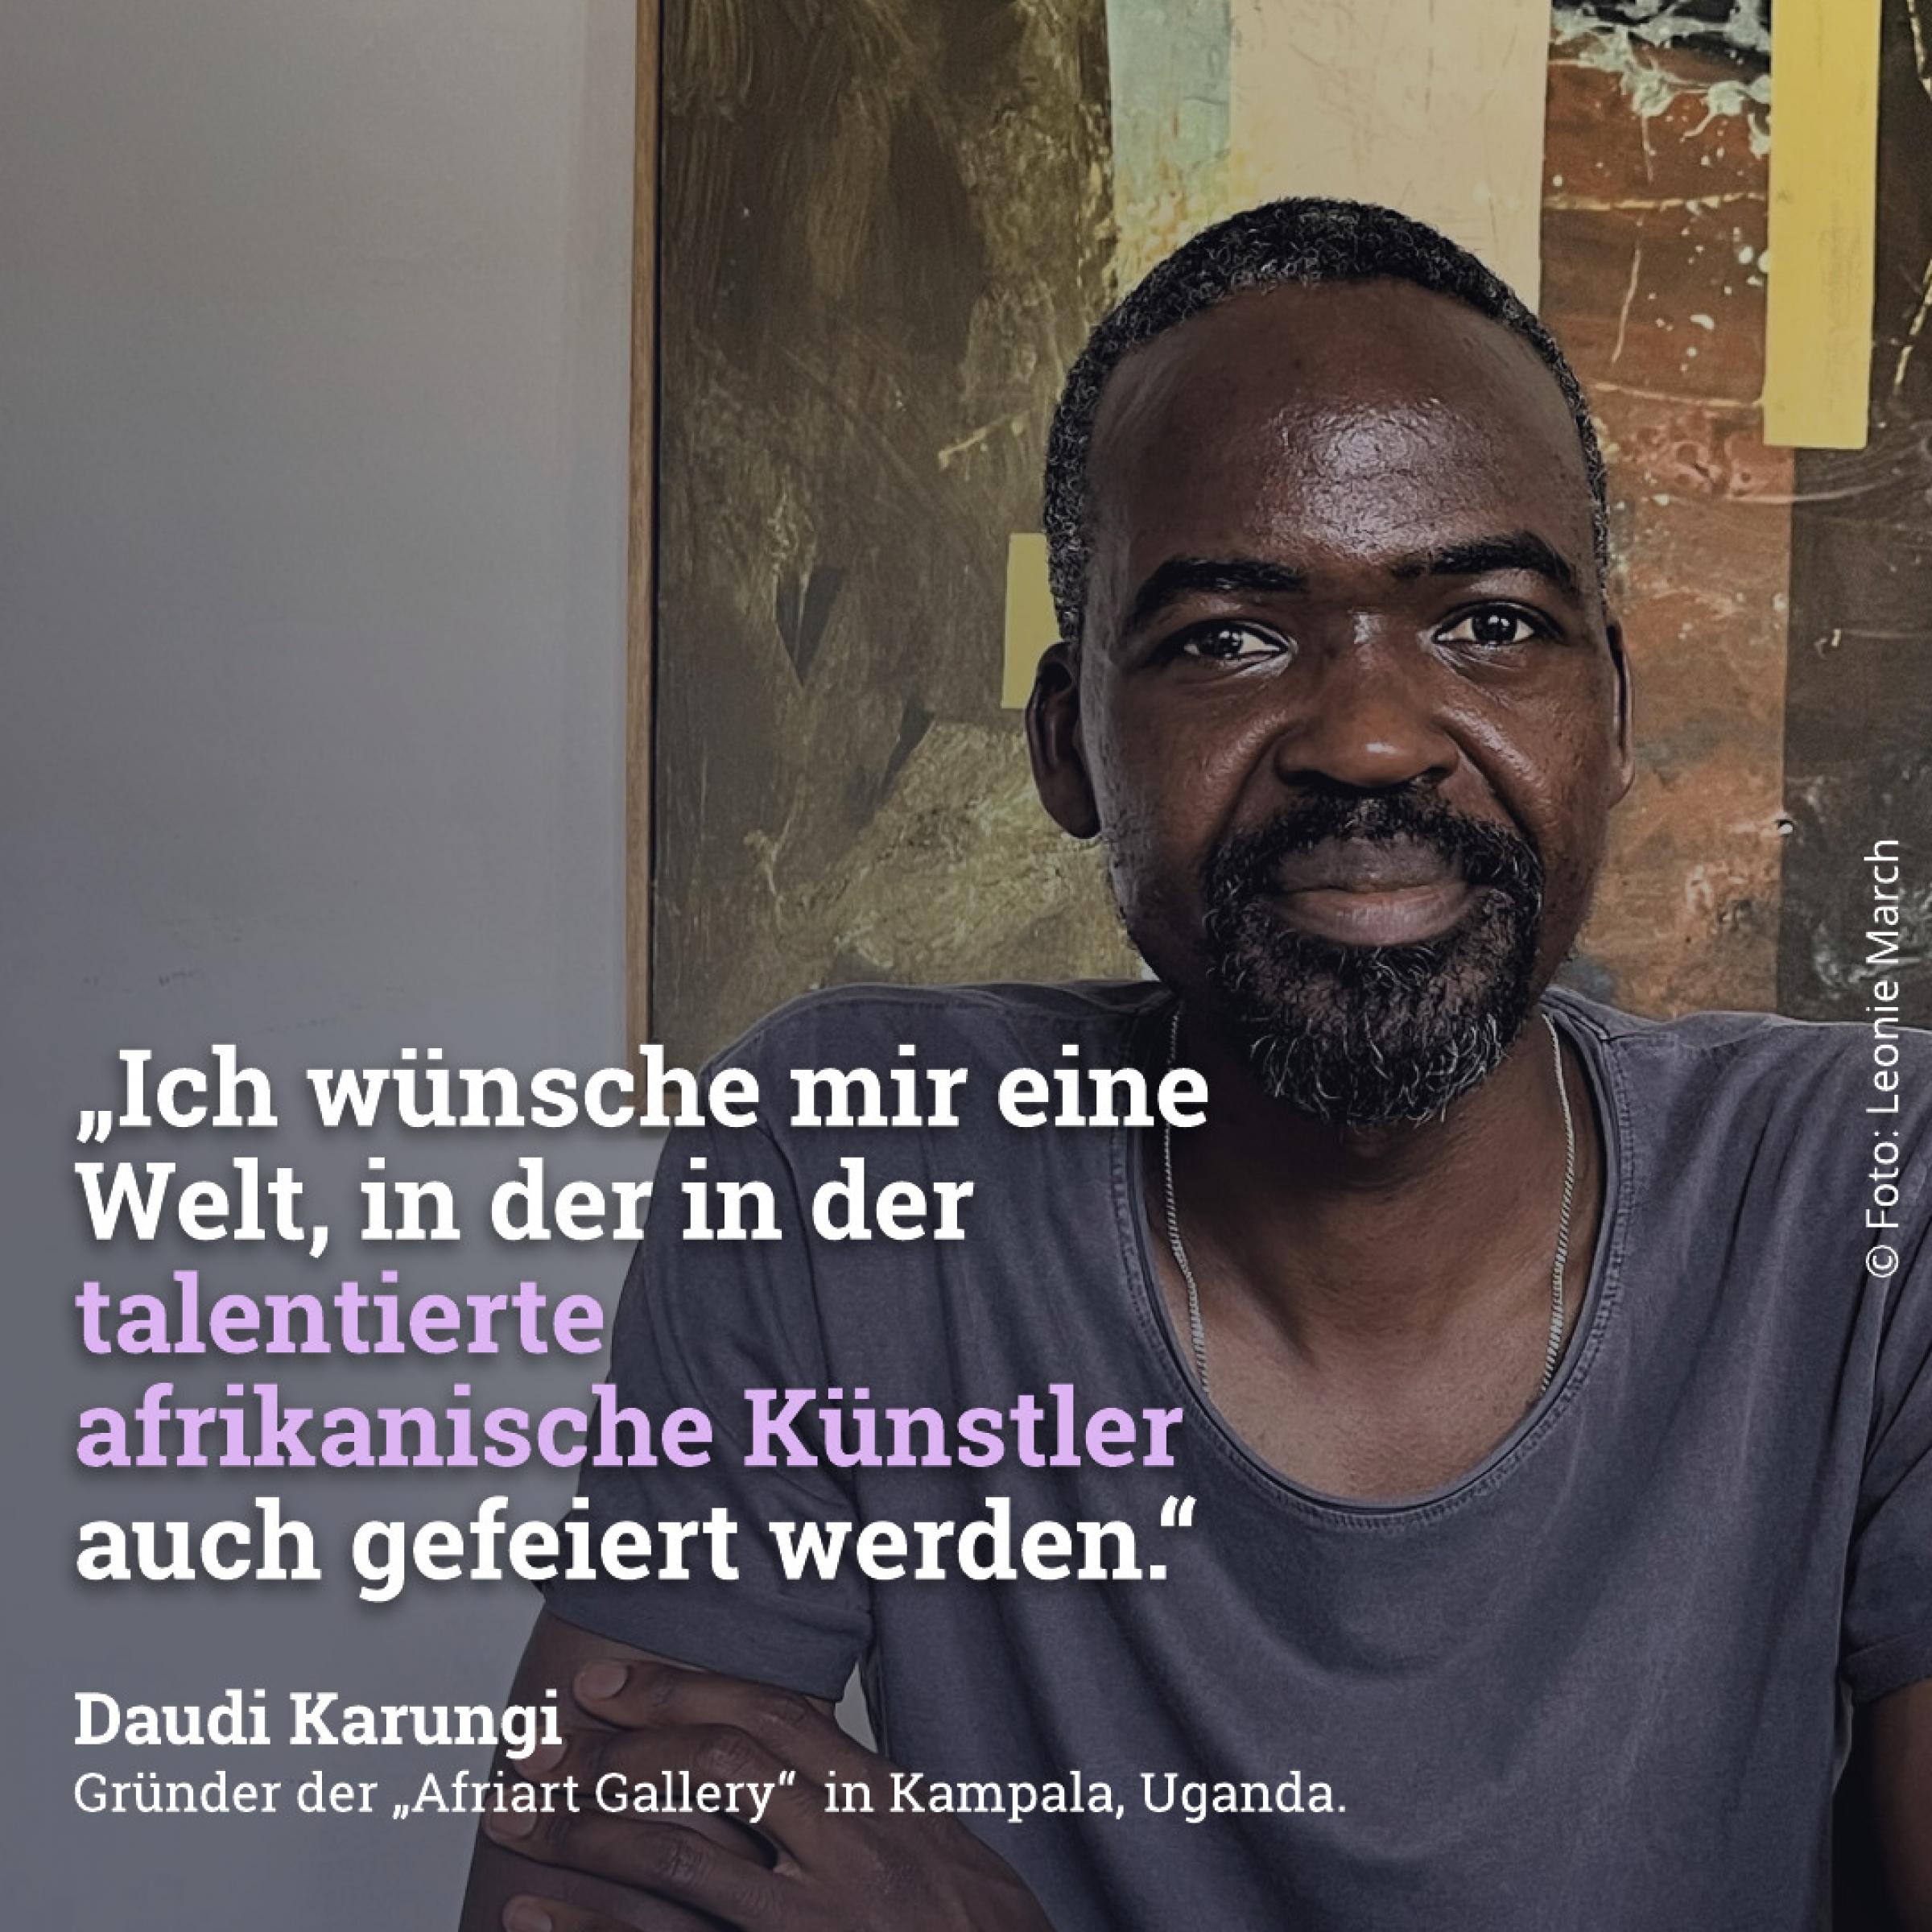 Ich wünsche mir eine Welt in der talentierte afrikanische Künstler auch gefeiert werden. – Daudi Karungi